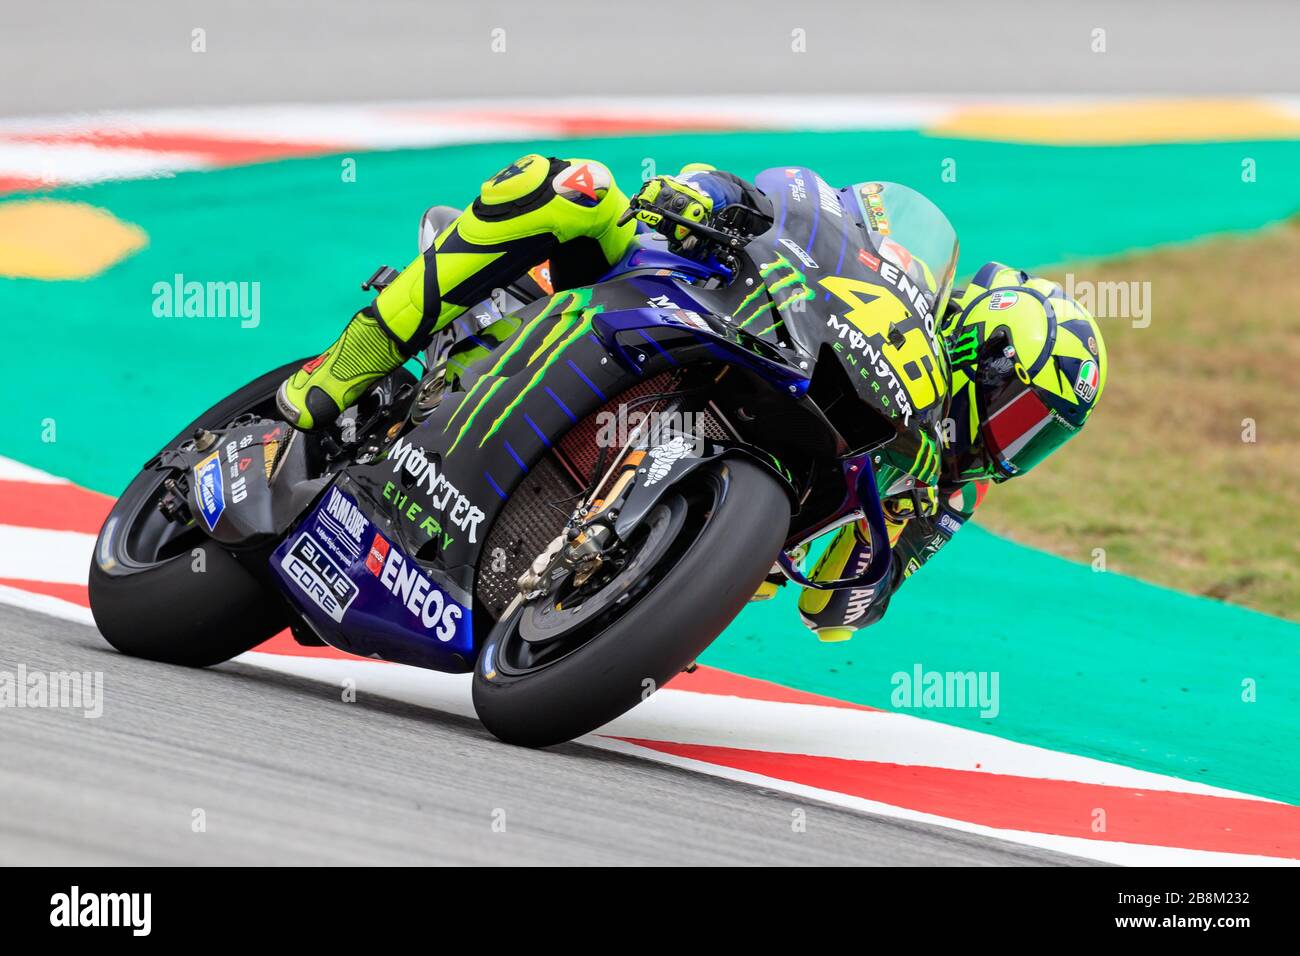 MONTMELO, SPANIEN - 14. JUNI: Valentino Rossi von Monster Energy Yamaha MotoGP während der kostenlosen MotoGP-Übung auf dem Circuit de Catalunya am 14. Juni 2019 in Stockfoto